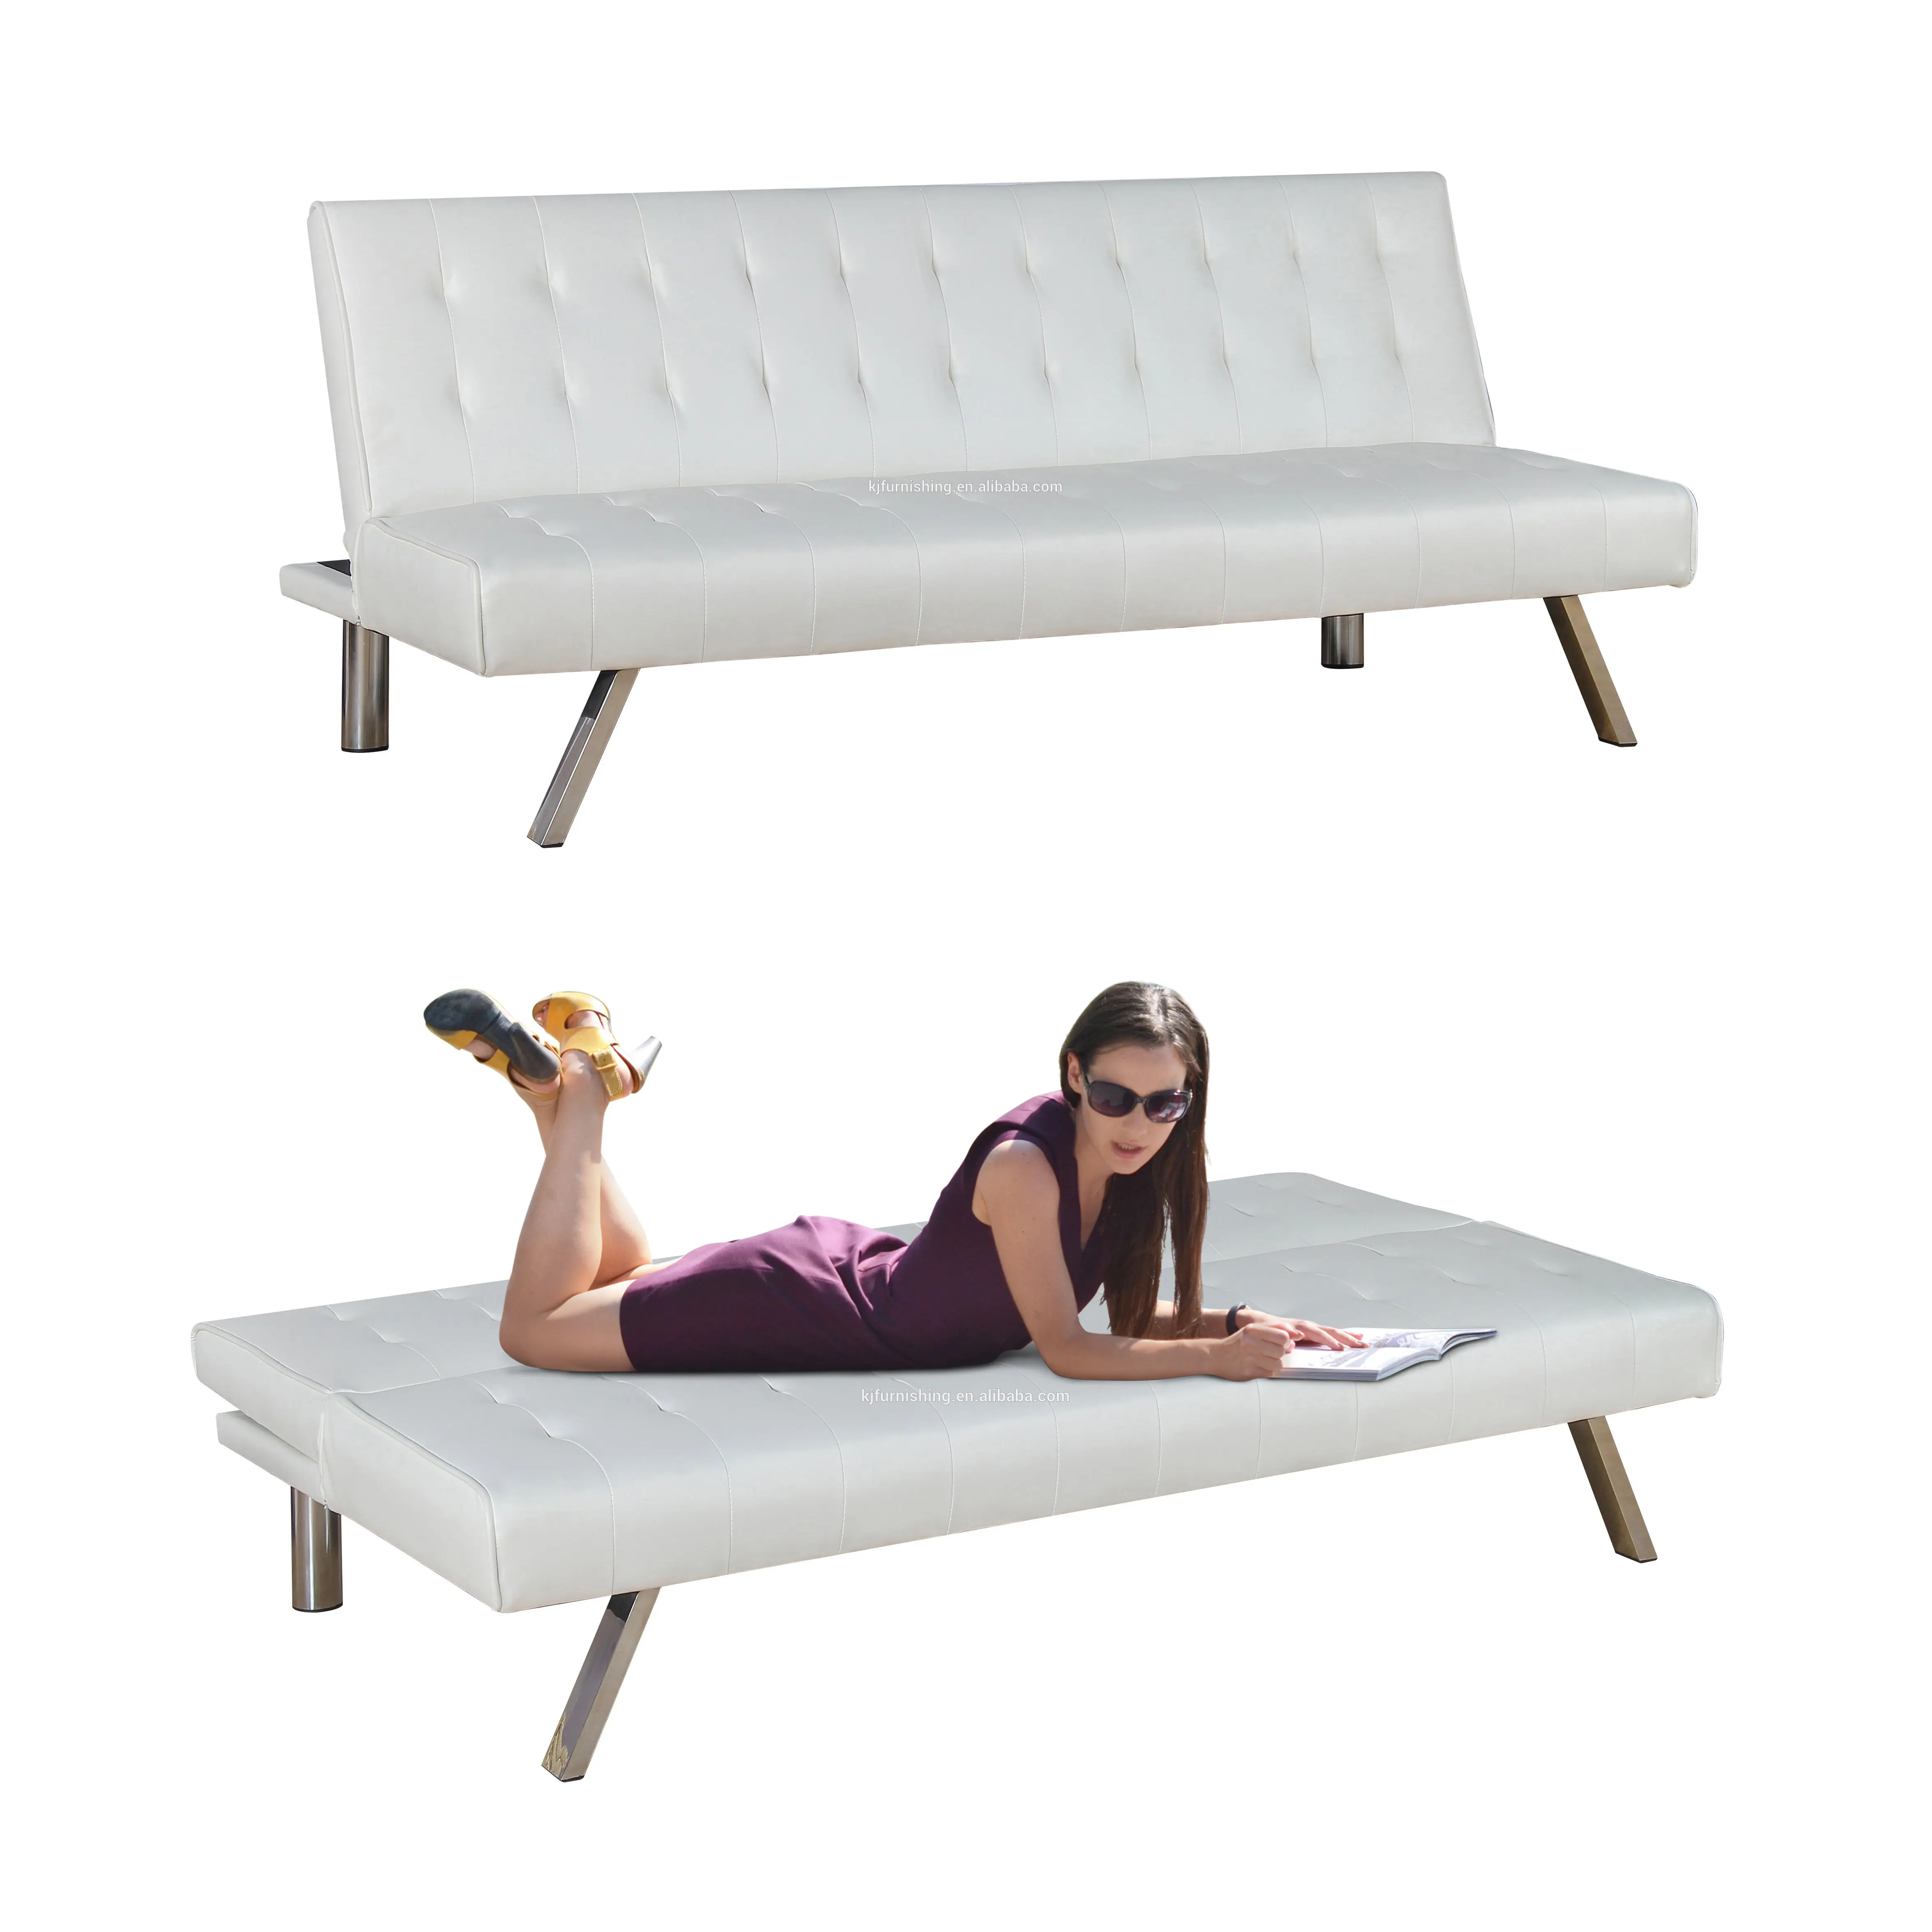 Einfaches Design Stoff Futon Sofa Cum Bed Folding Moderne Wohnzimmer möbel Sleeper Schlafs ofa